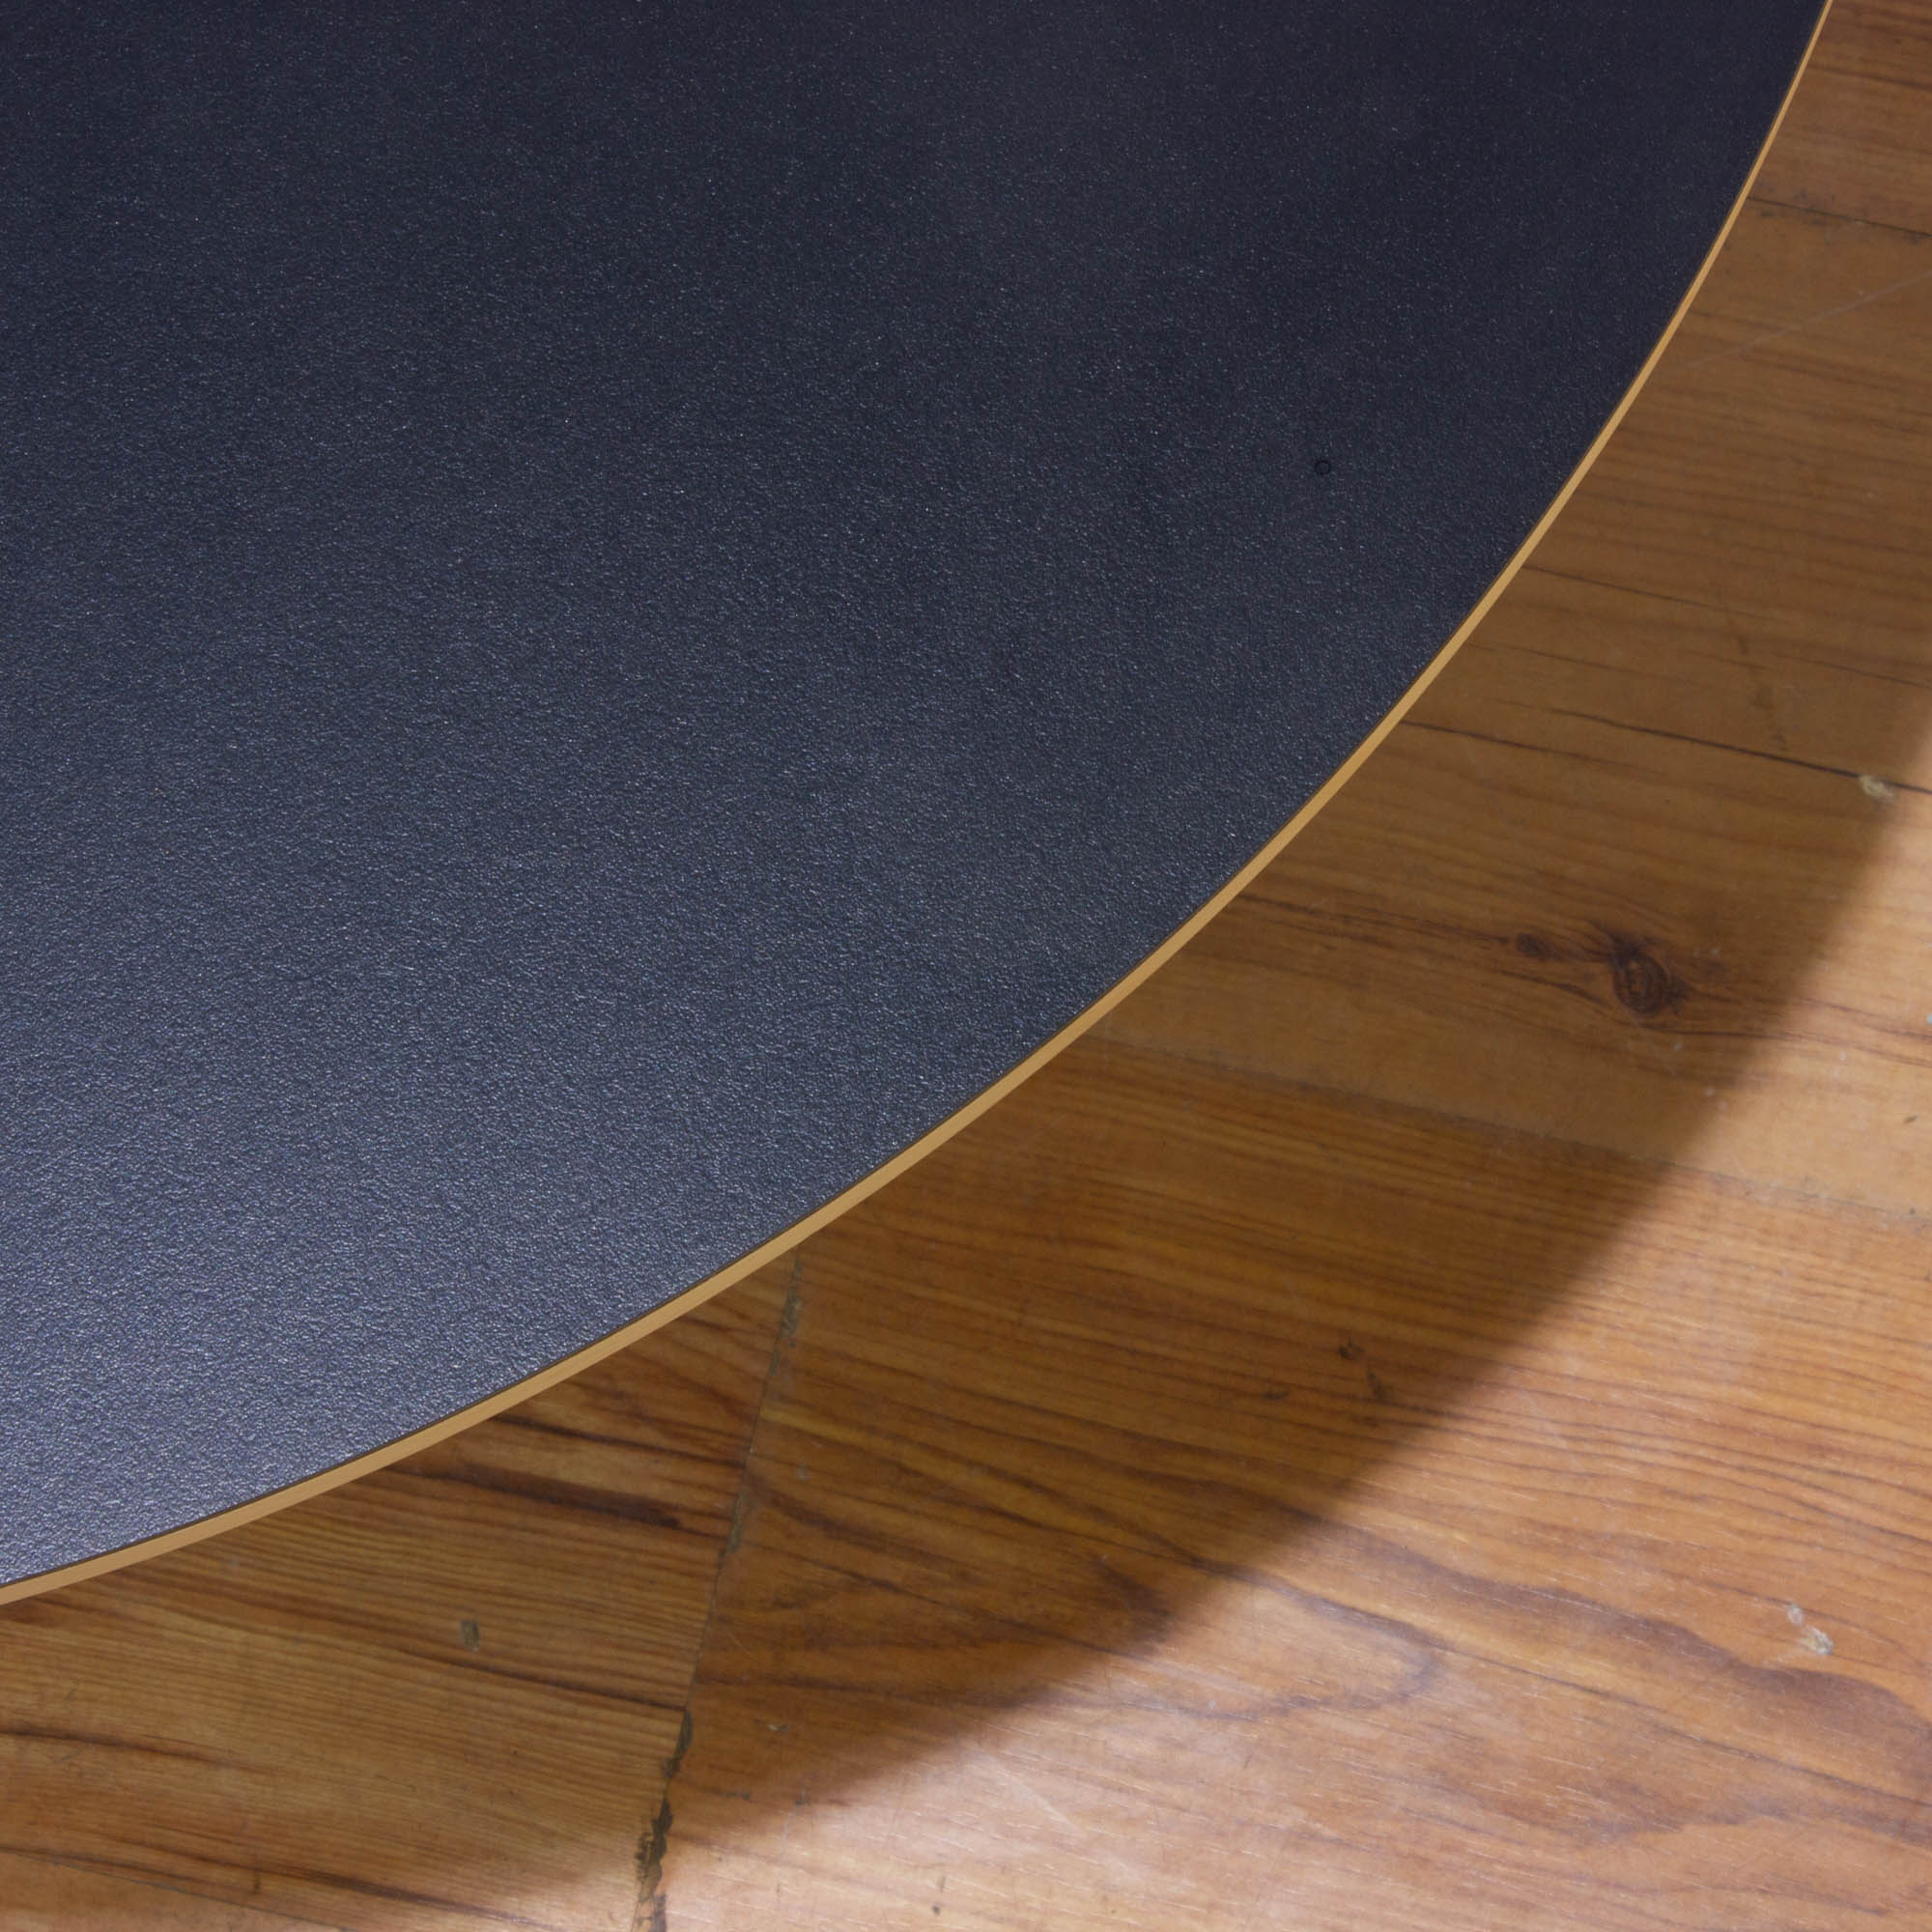 Vitra Nelson Coffe Table Beistelltisch - Platte schwarz Ø70 cm - 4-Sternfuß schwarz